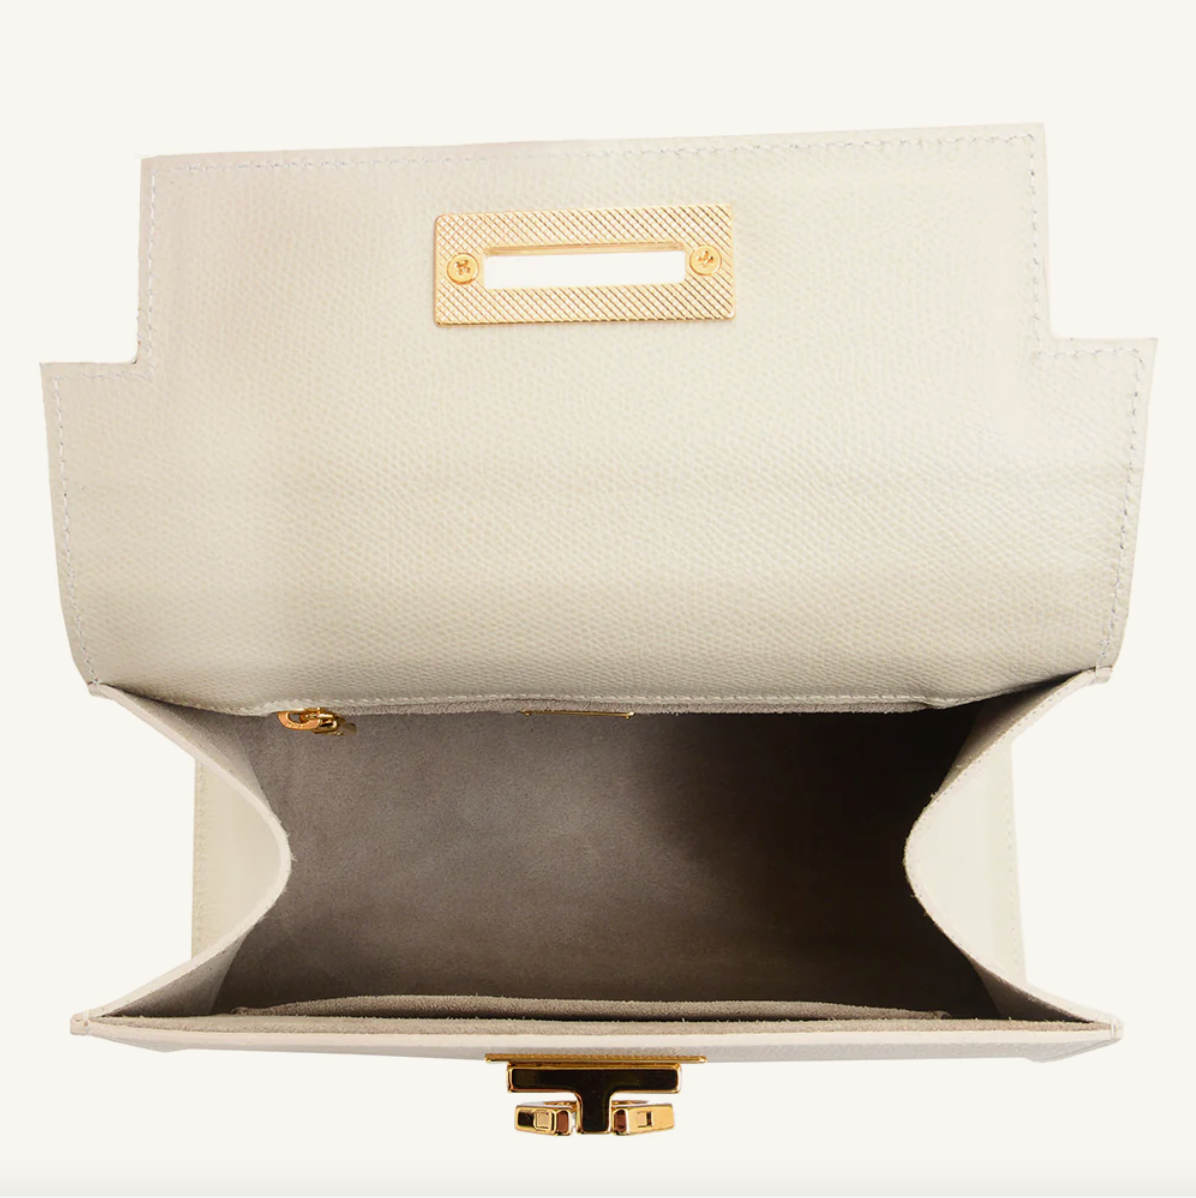 Carbotti handbags - Elegant Made in Italy handbags